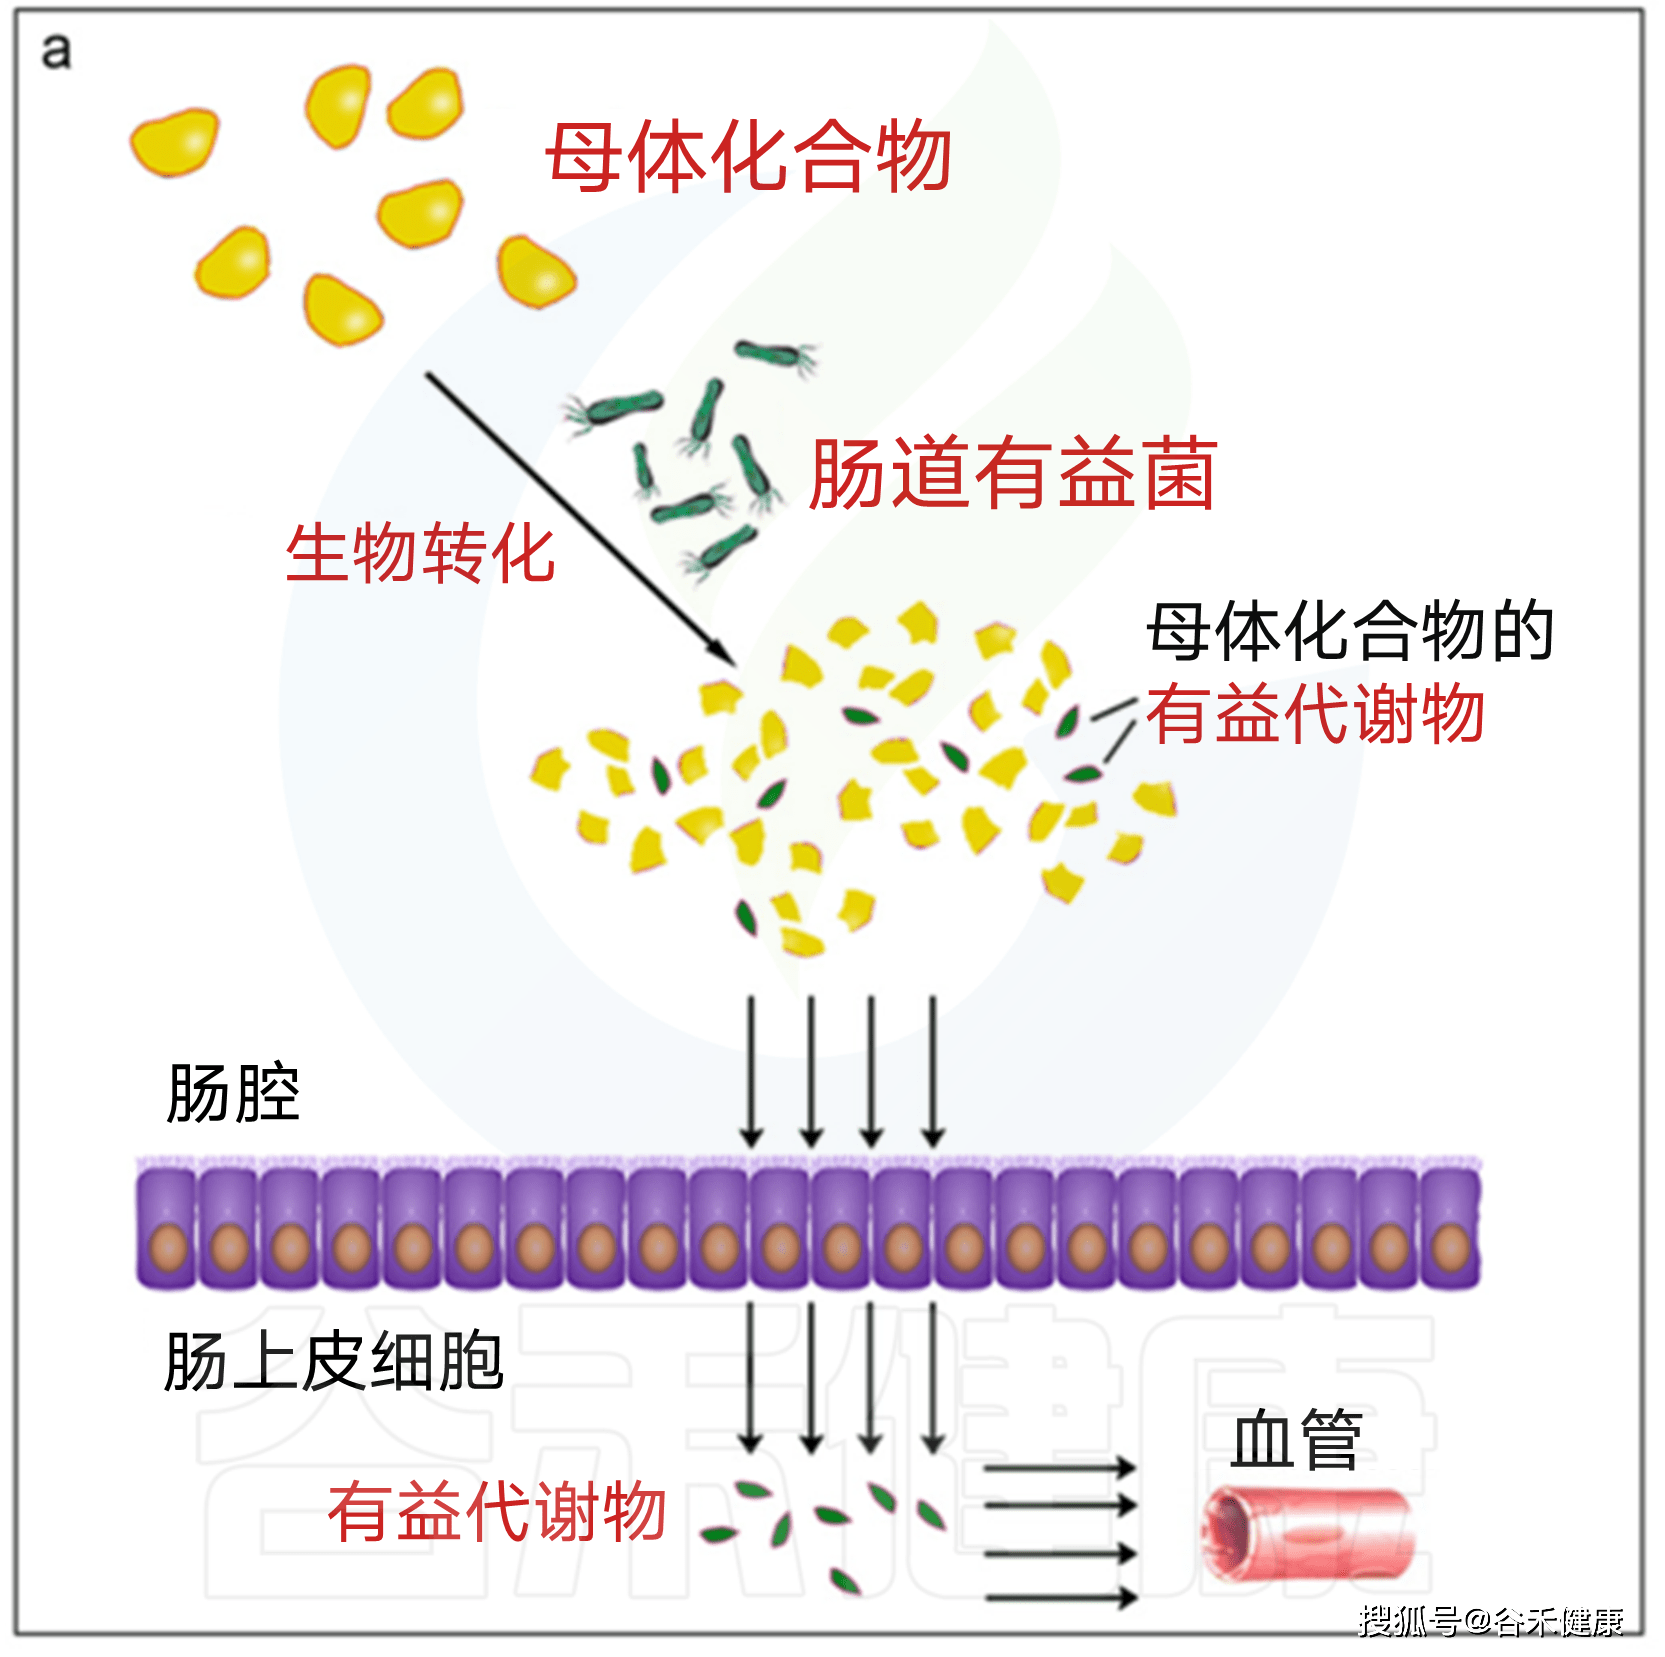 途径1肠道微生物将母体化合物直接转化为有益代谢物